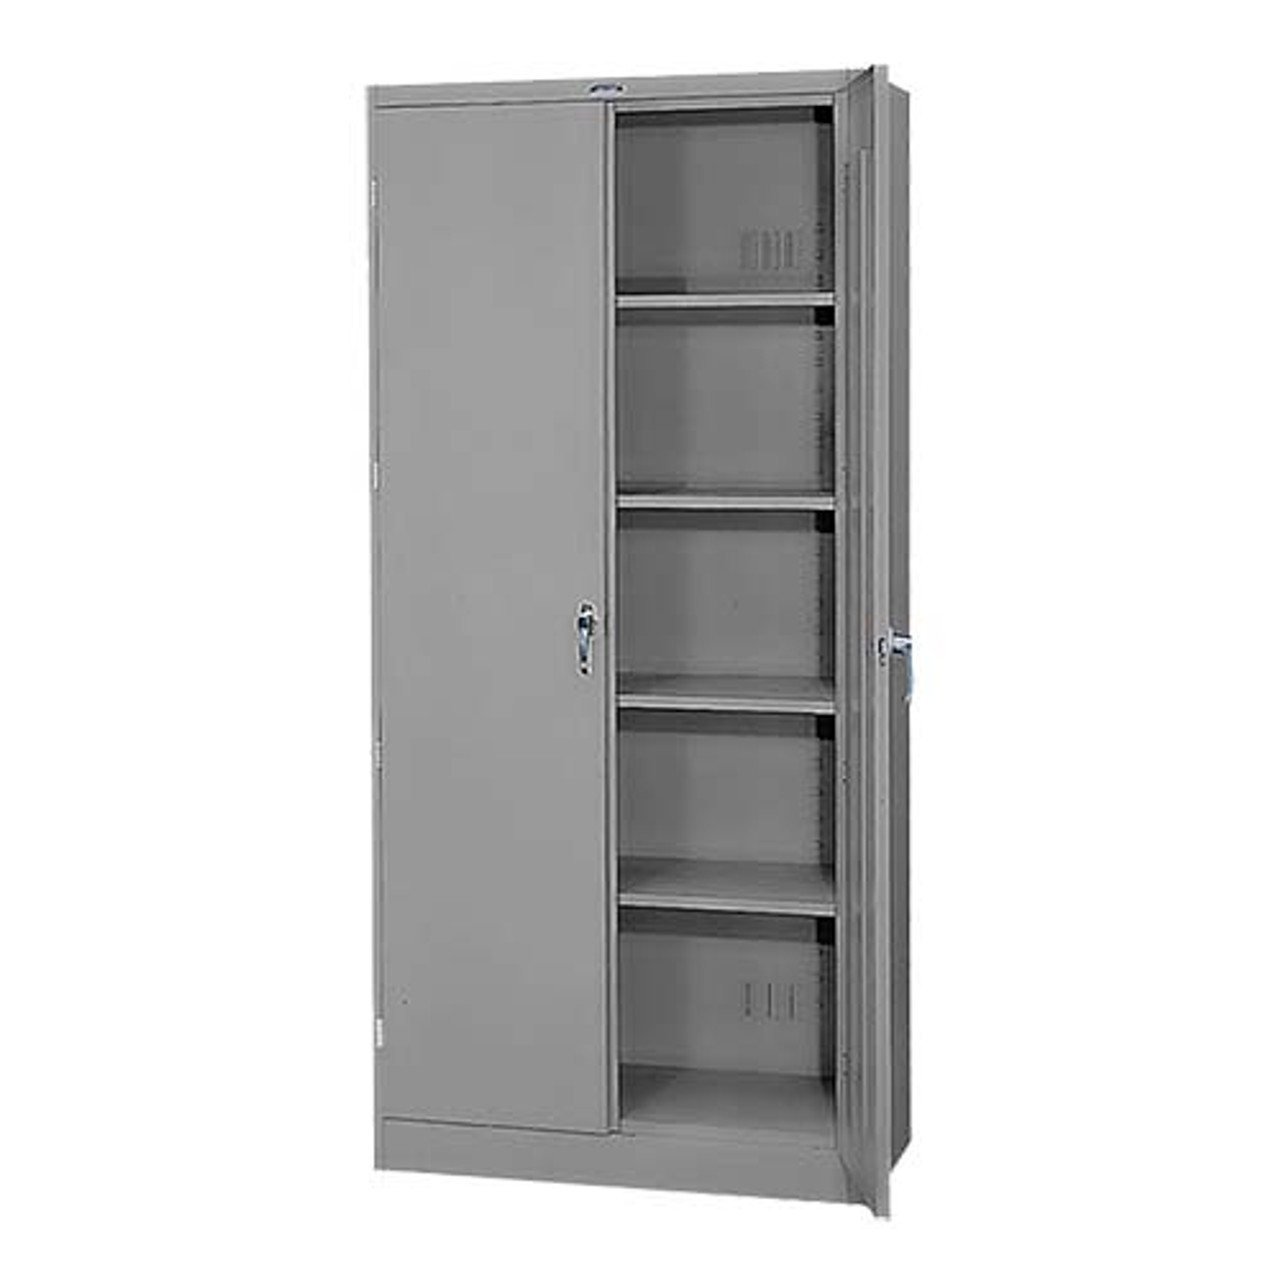 Tennsco Deluxe Metal Storage Cabinet 36 X 18 X 78 Midwest